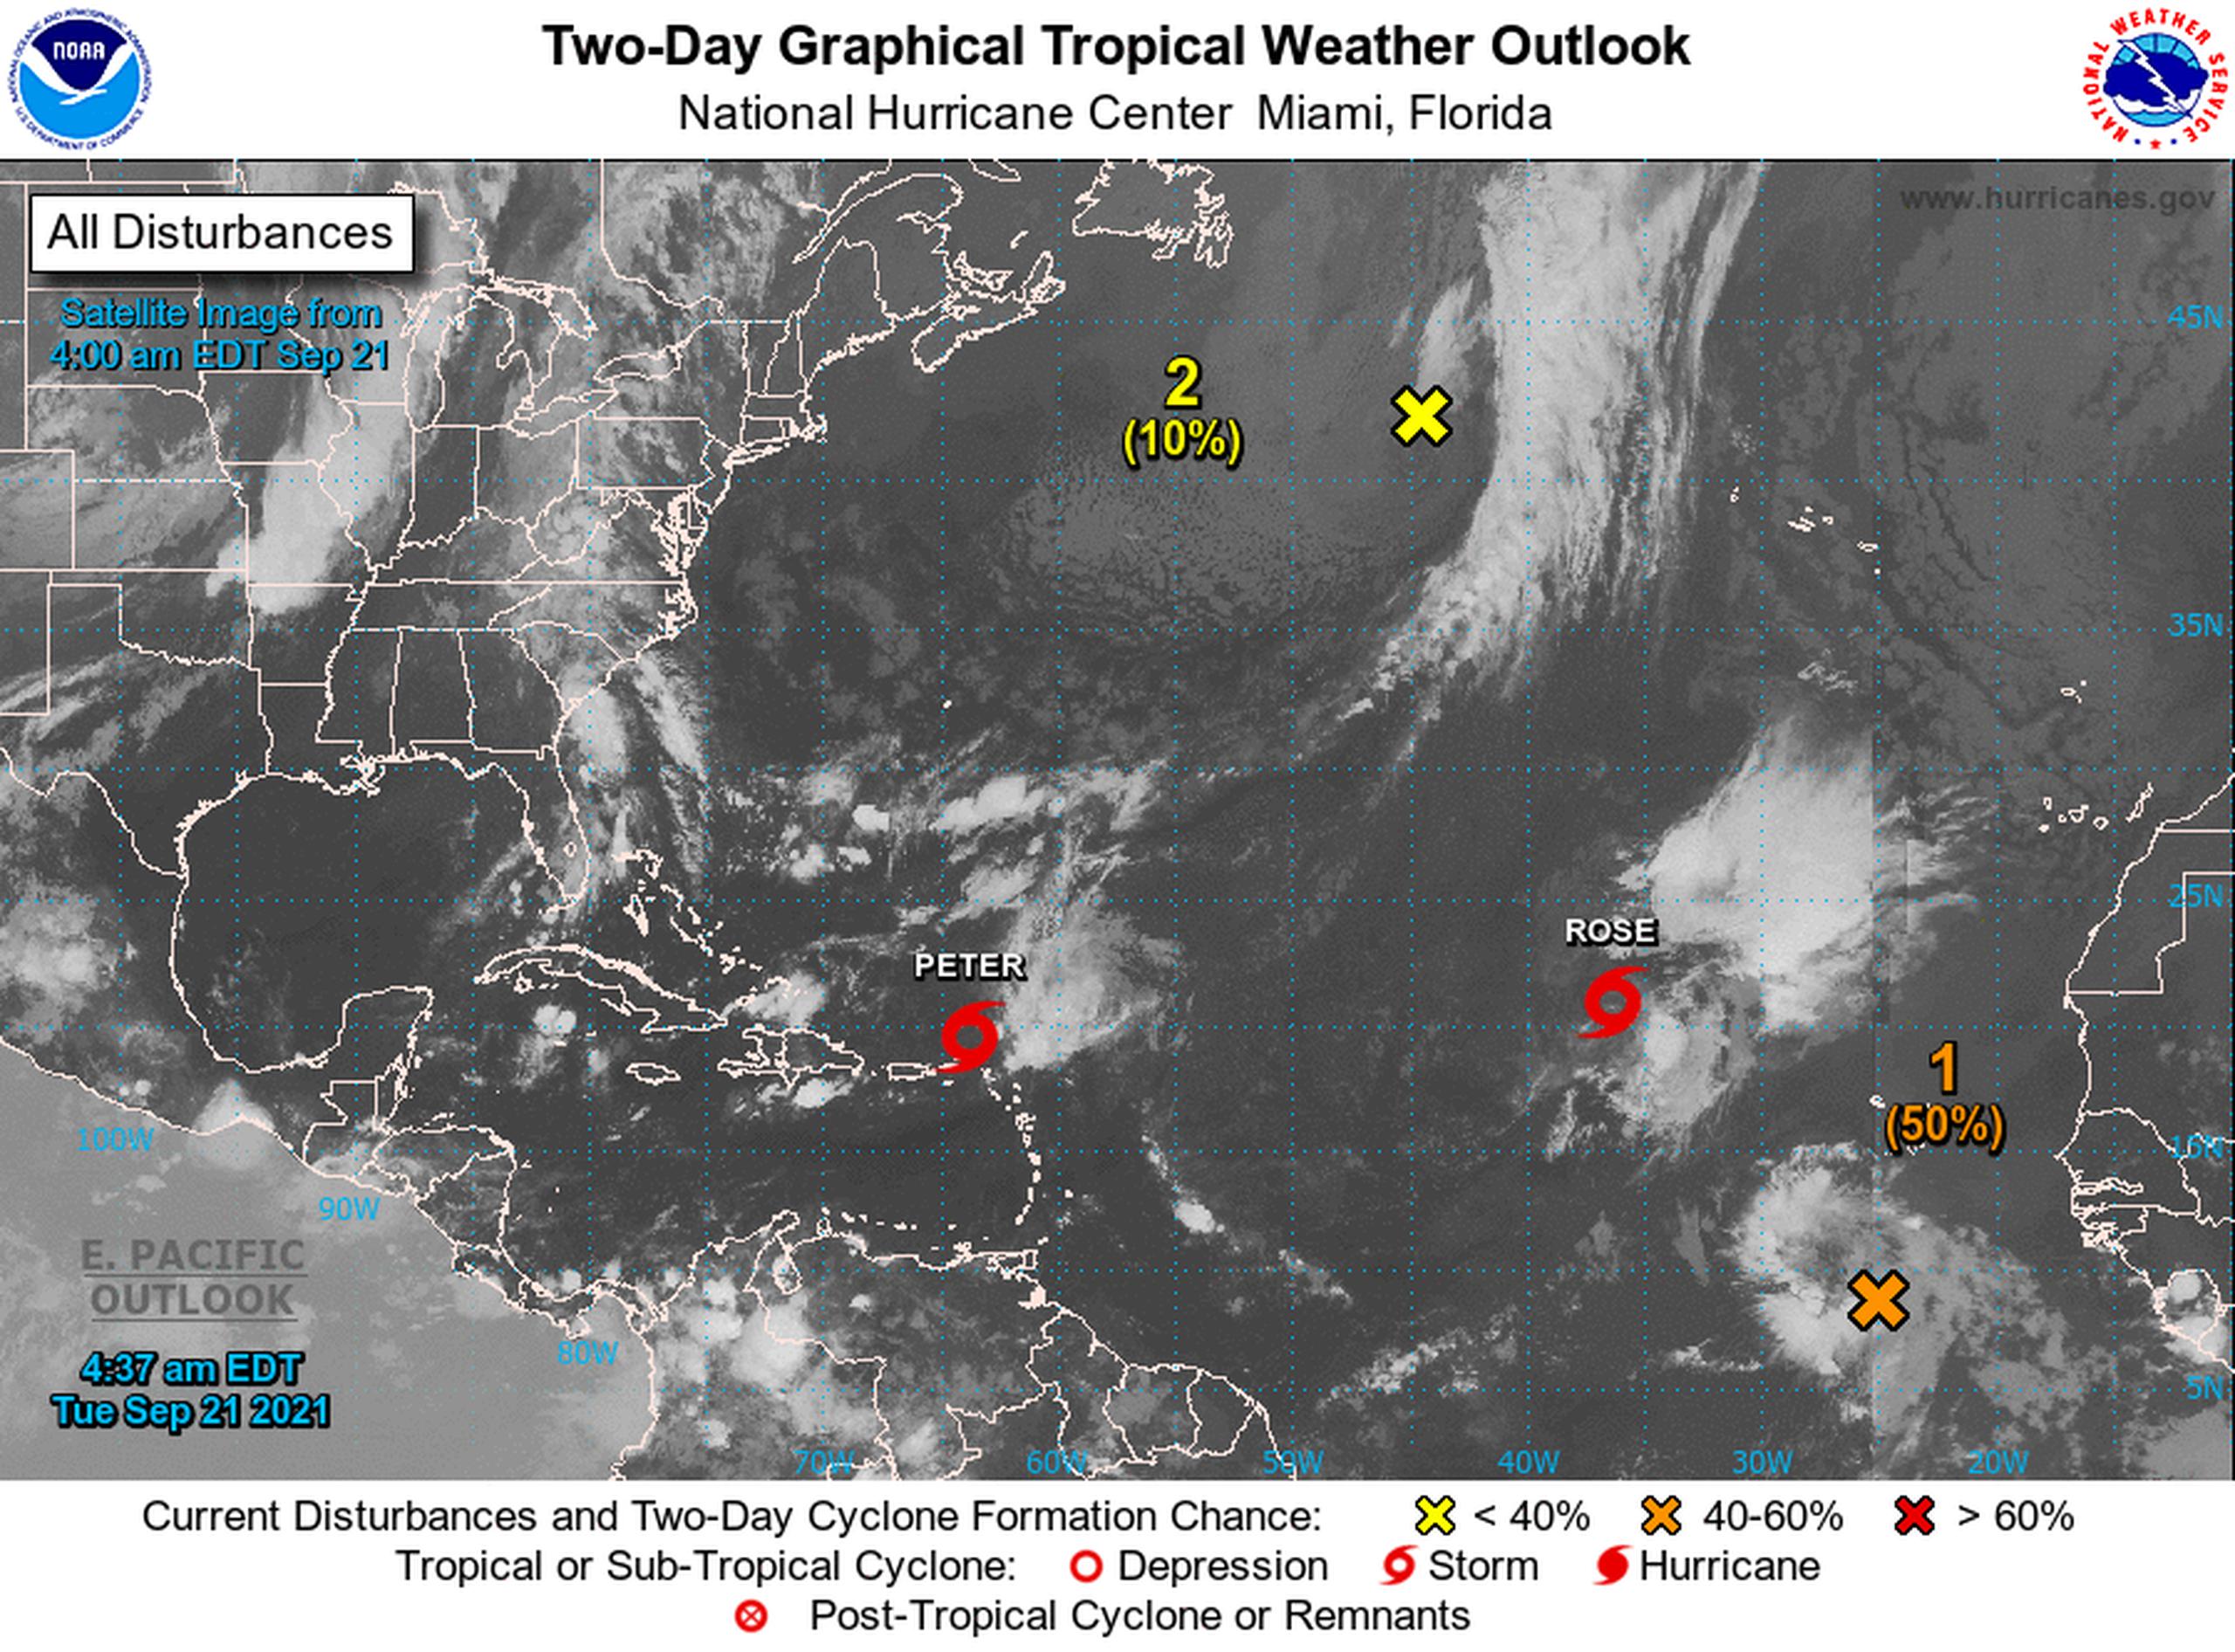 Sistemas atmosféricos que el Centro Nacional de Huracanes vigila en el océano Atlántico.